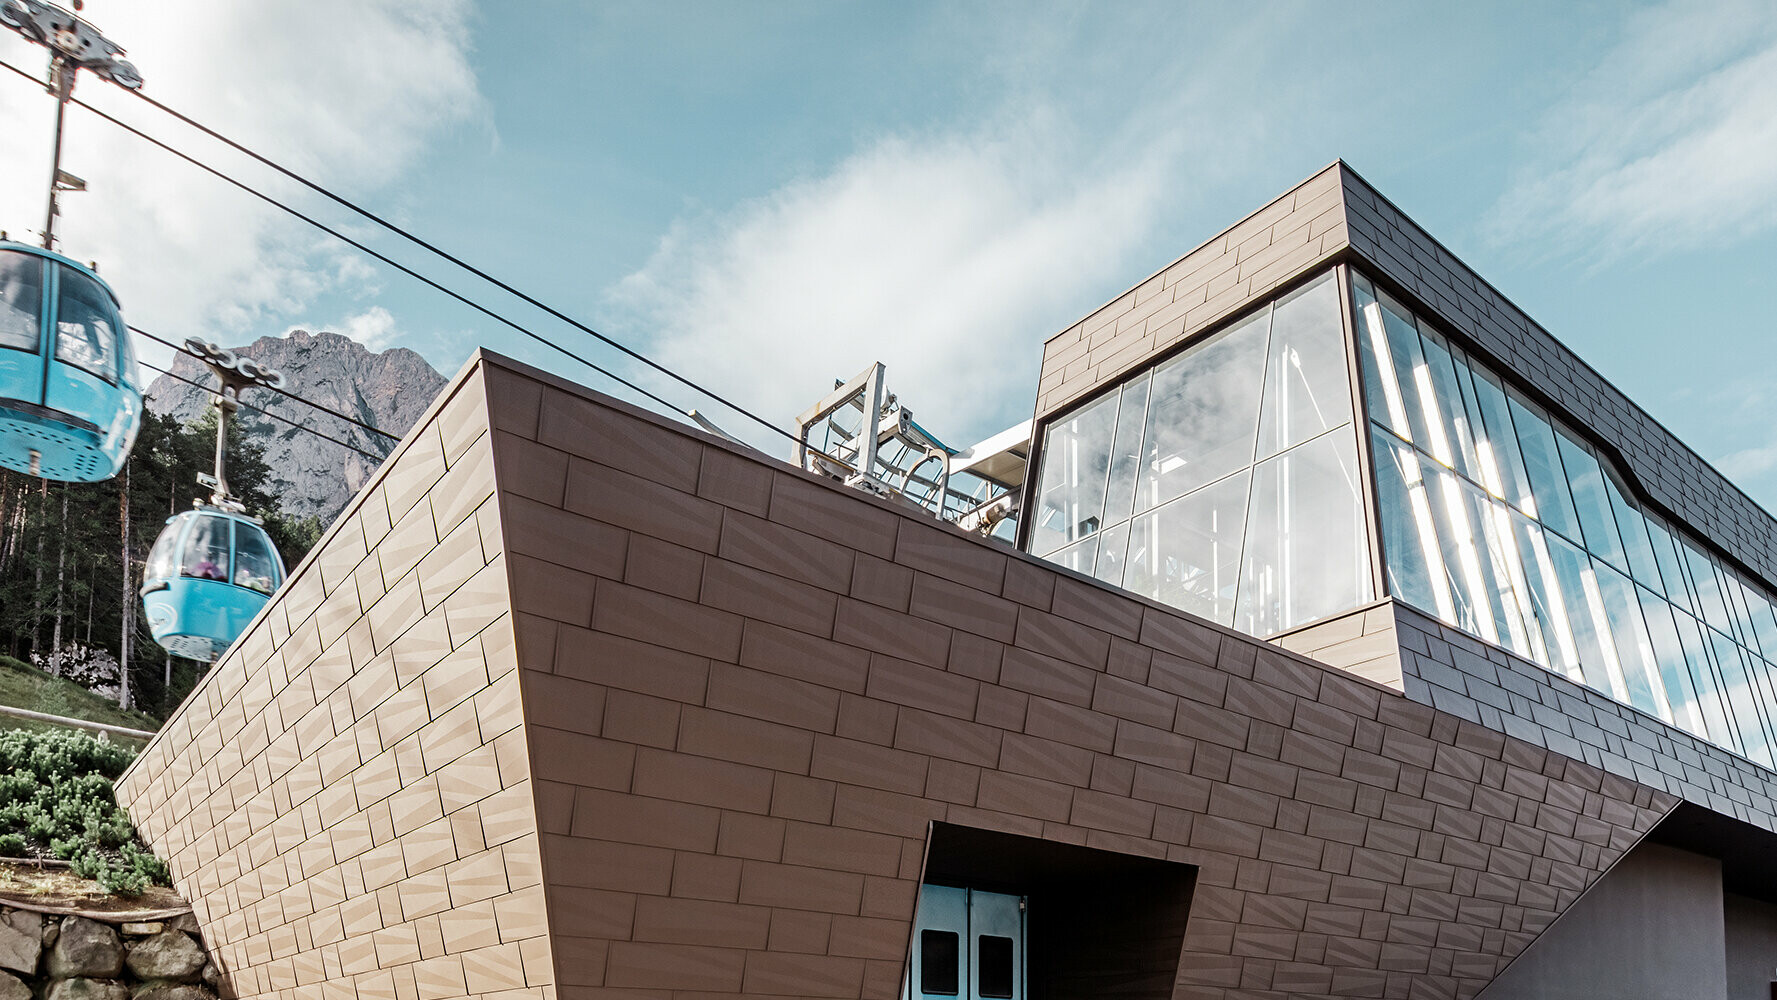 Donja stanica žičare u južnom Tirolu s modernom krovnom i fasadnom oblogom tvrtke PREFA u smeđoj boji.